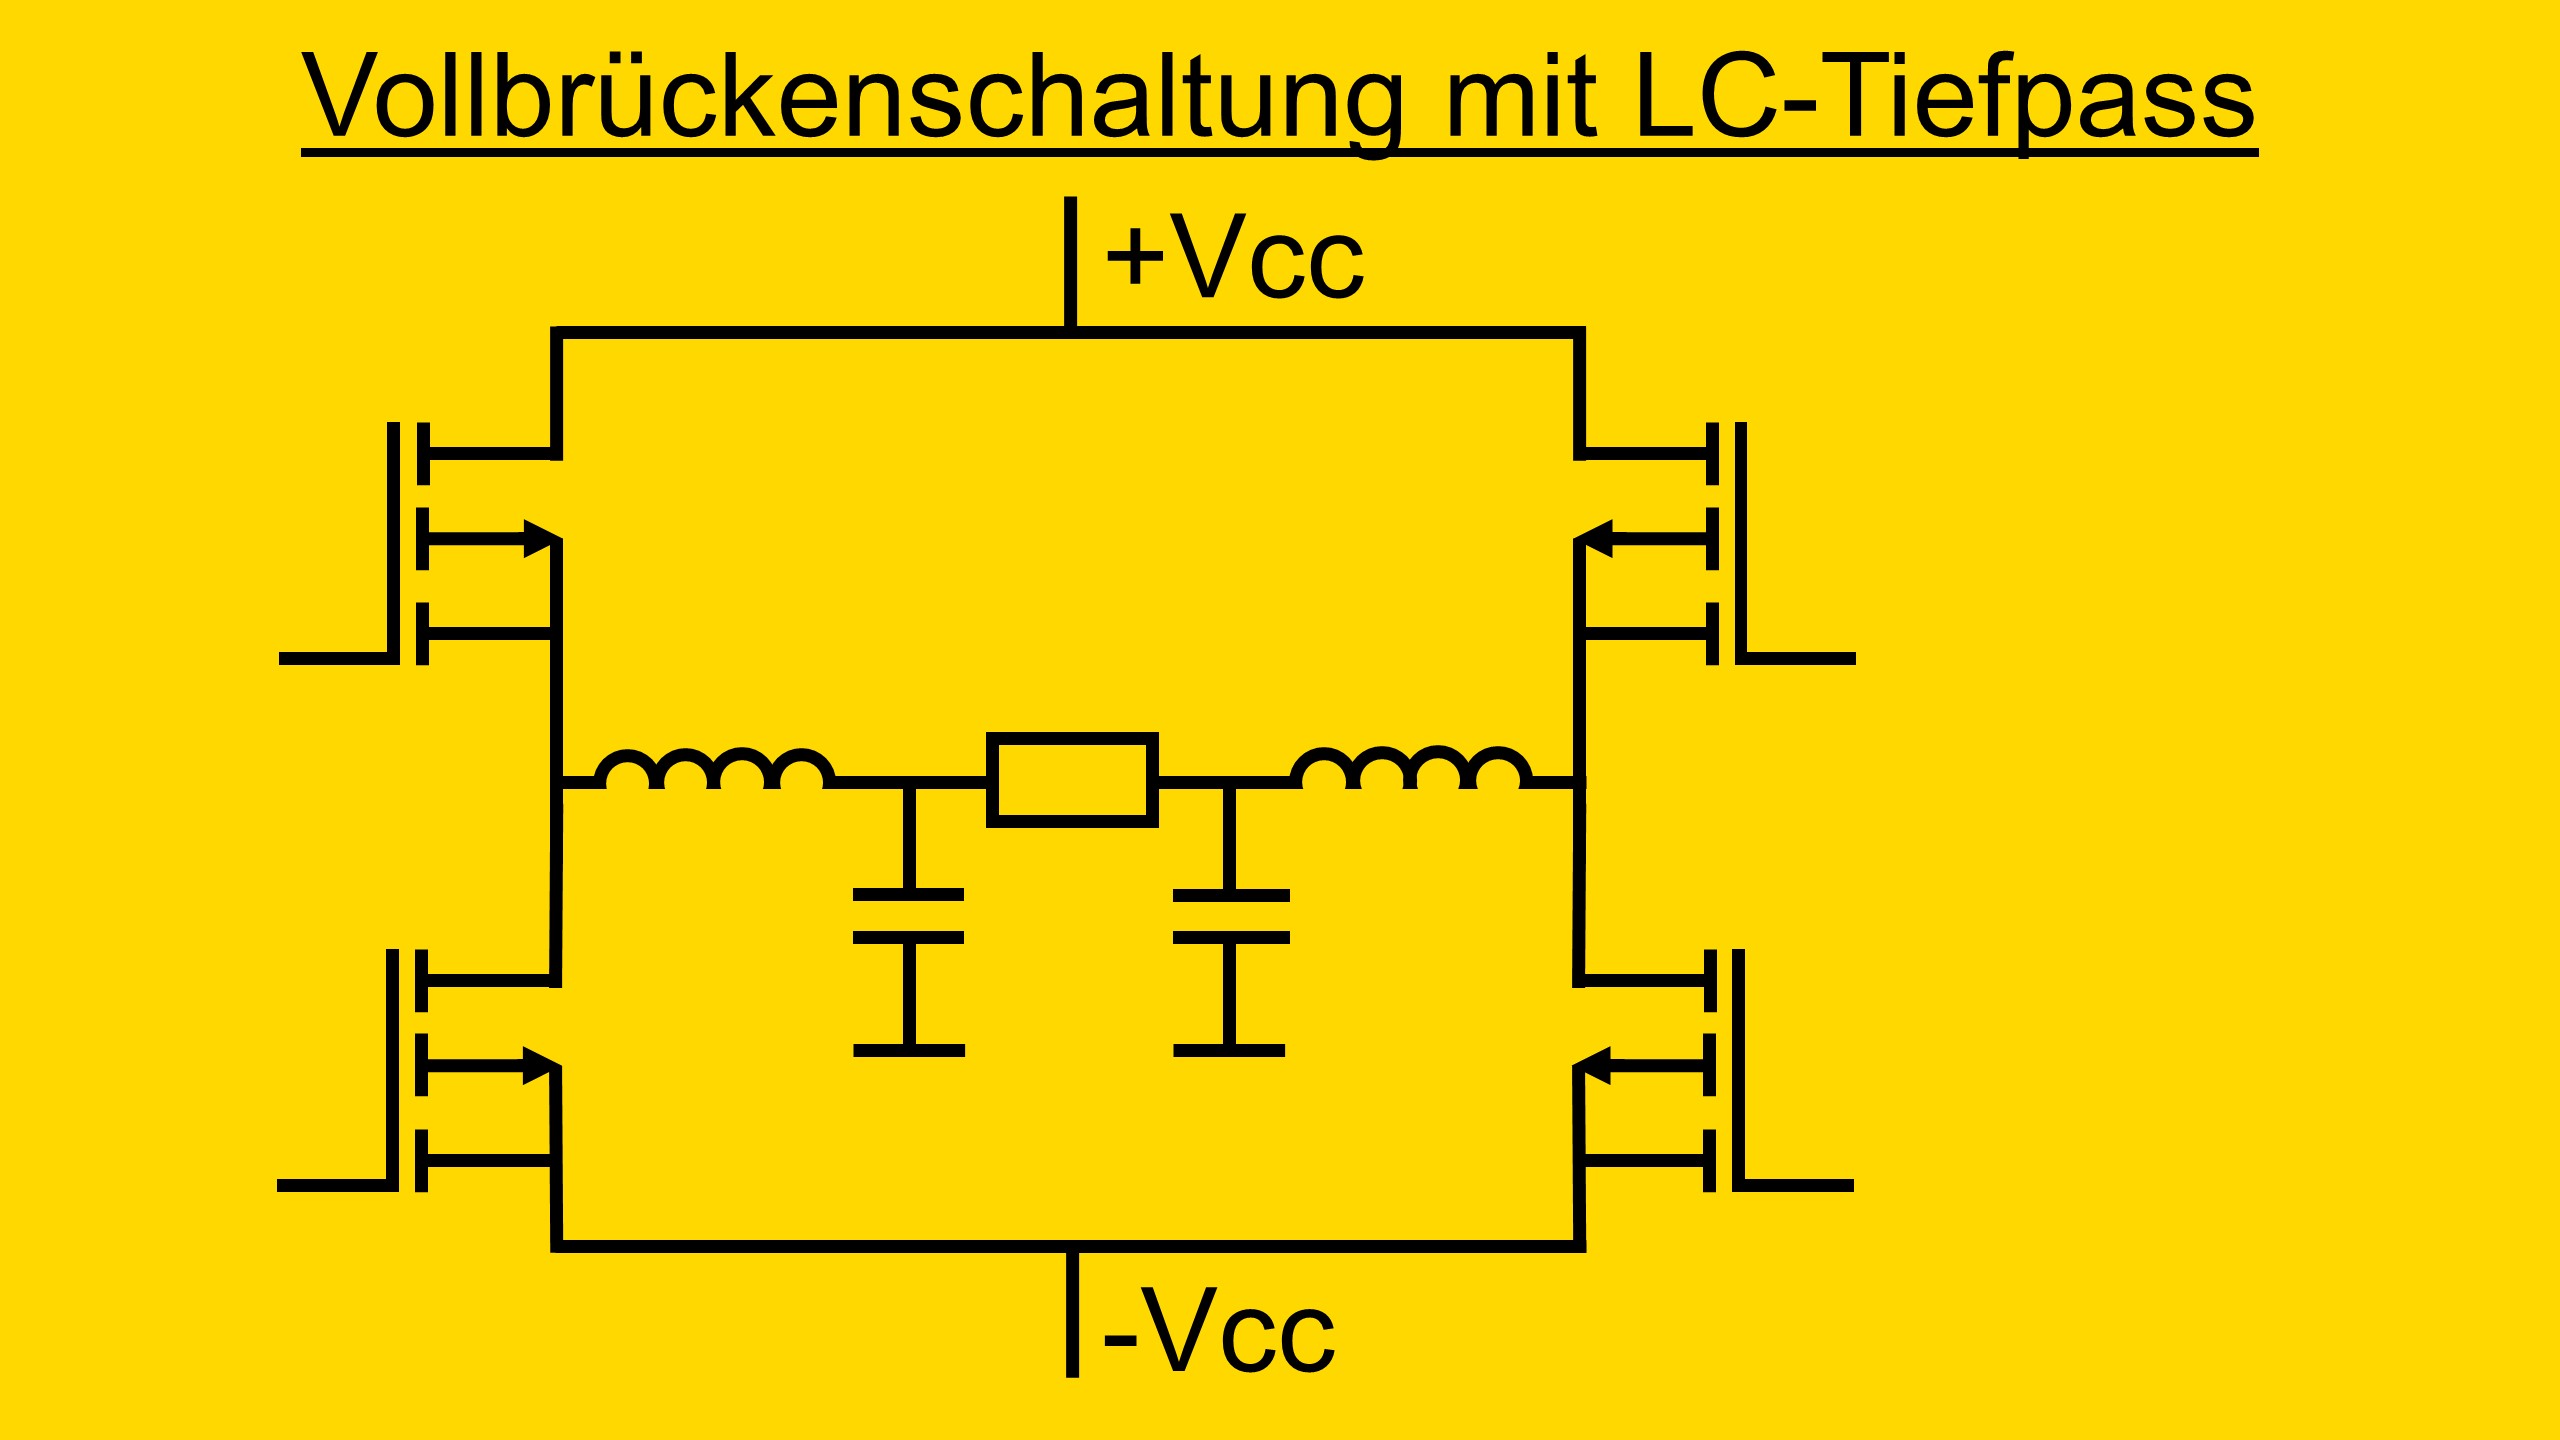 Dieses Bild zeigt den Filter des Klasse D Verstärker mit Vollbrückenschaltung welche mithilfe eines LC-Tiefpass realisiert ist